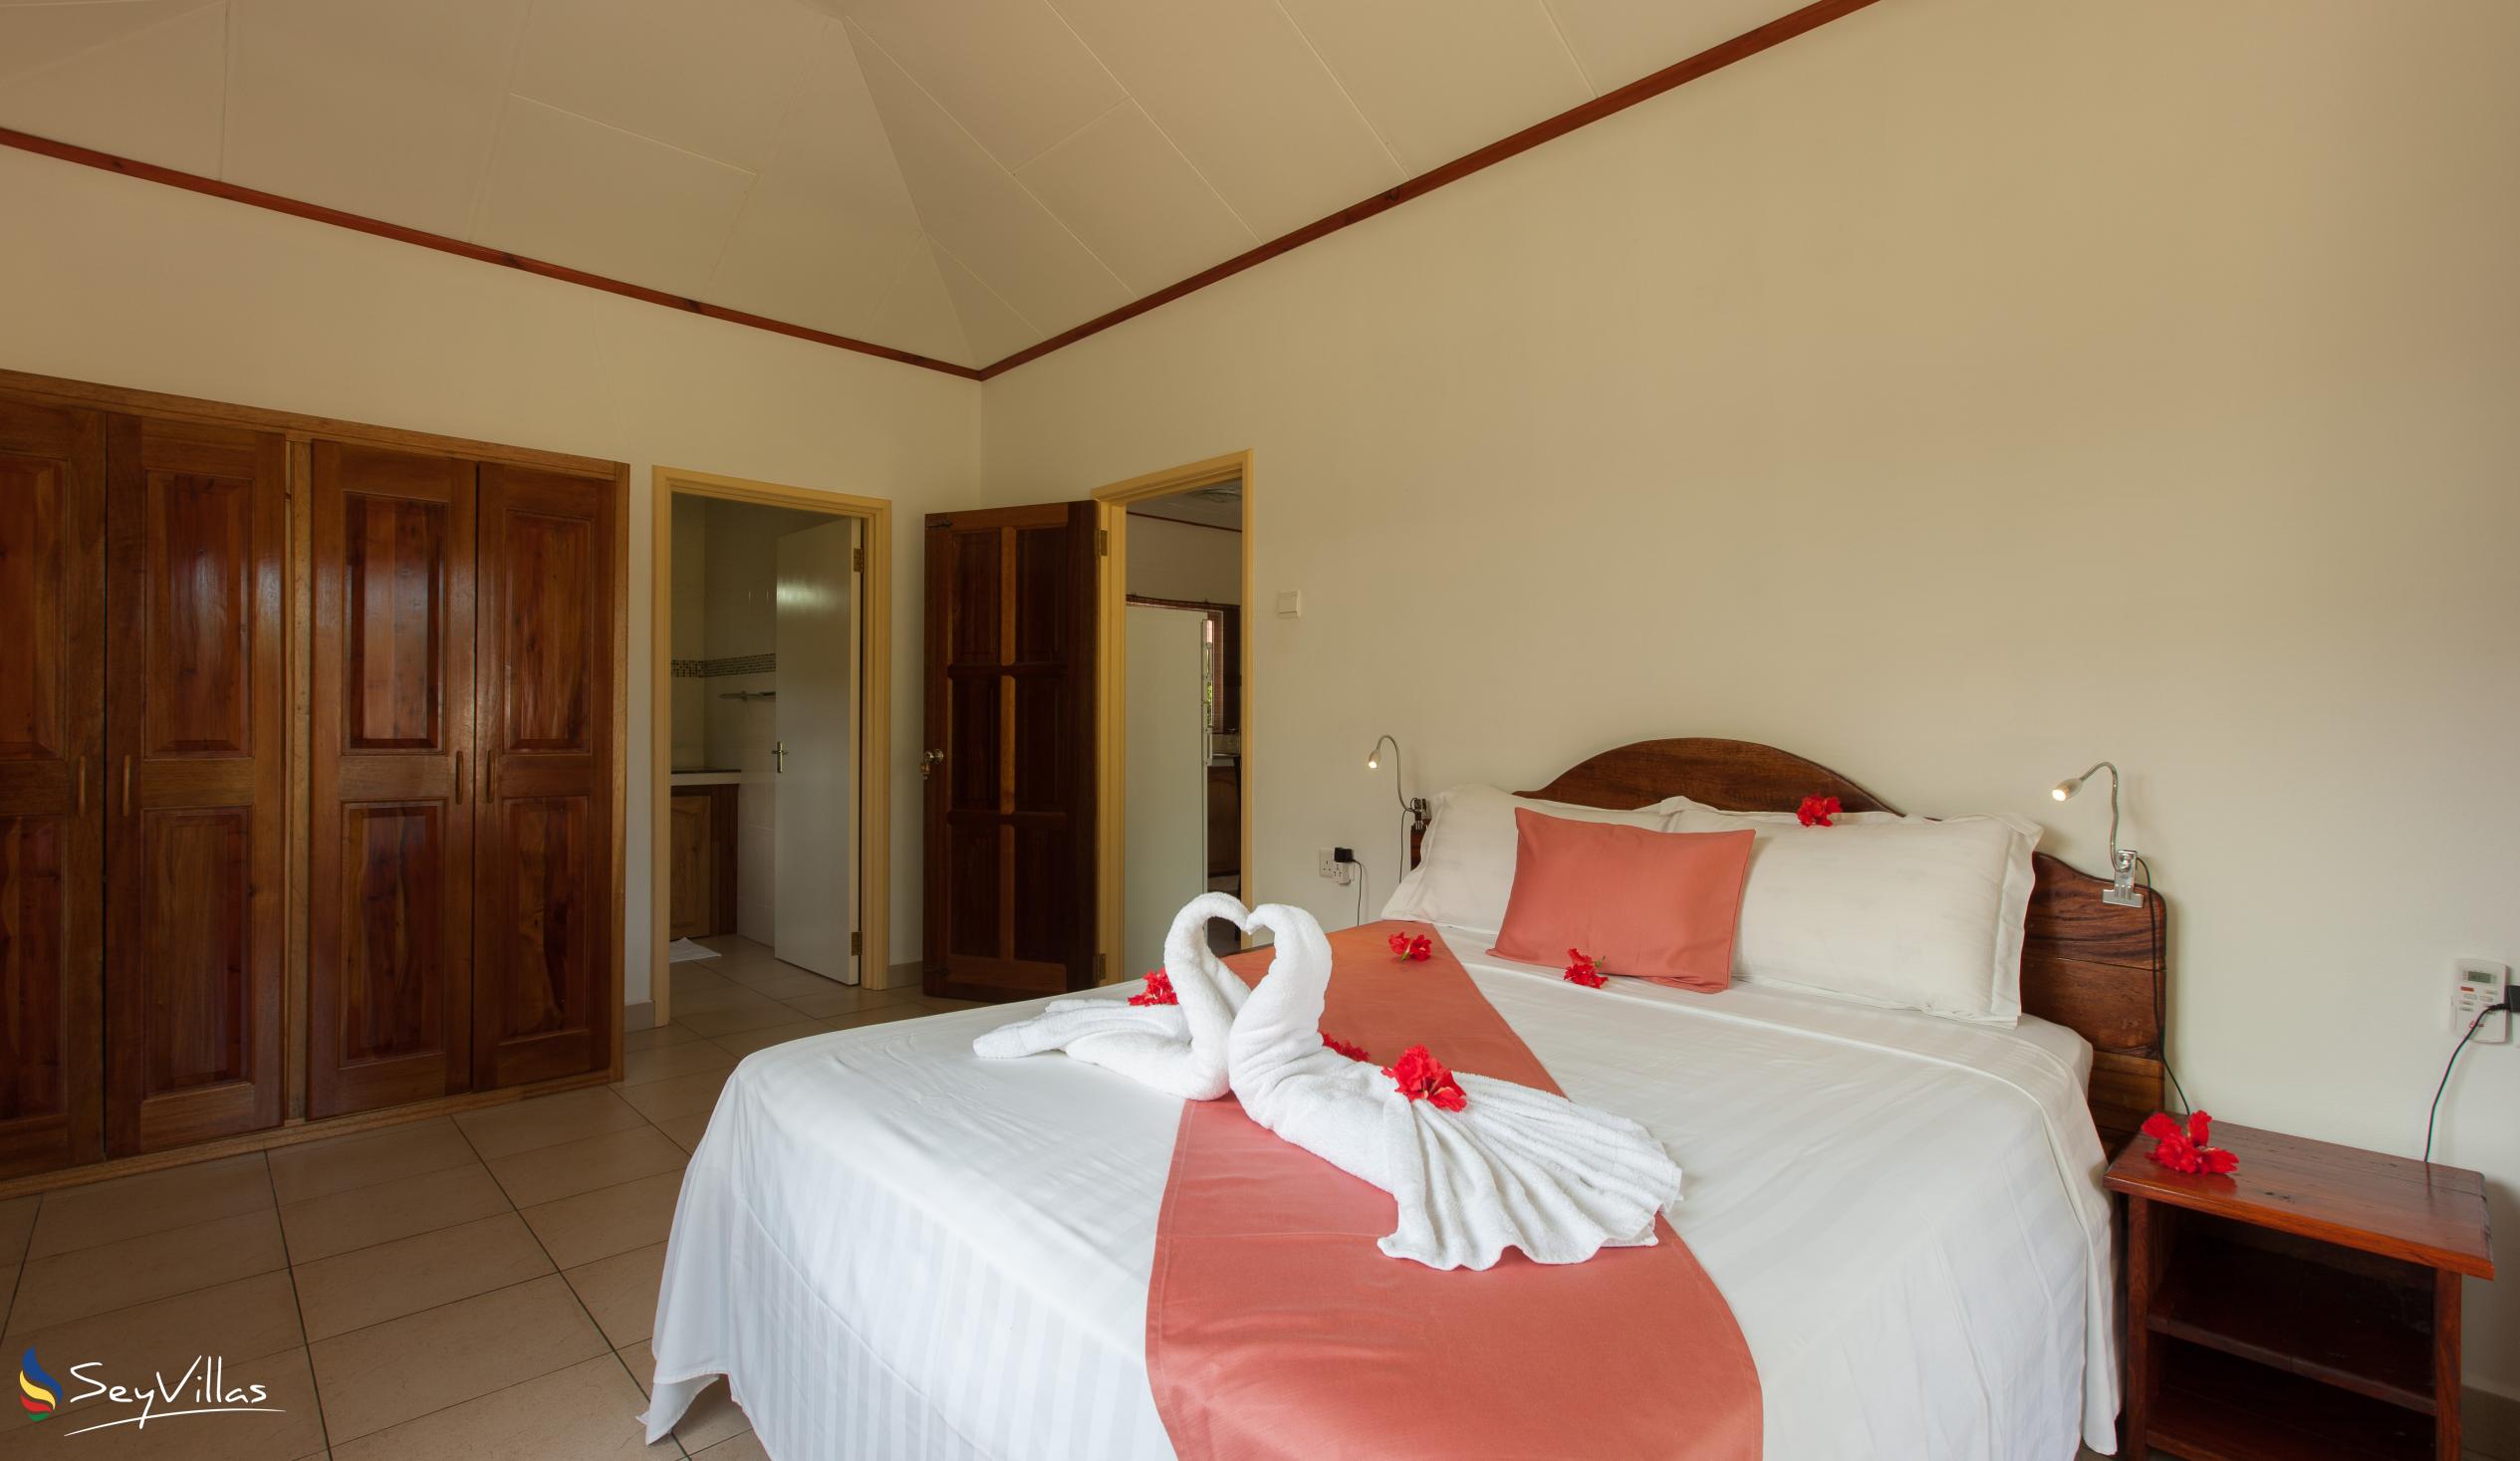 Photo 51: Hostellerie La Digue - 2-Bedroom Chalet - La Digue (Seychelles)